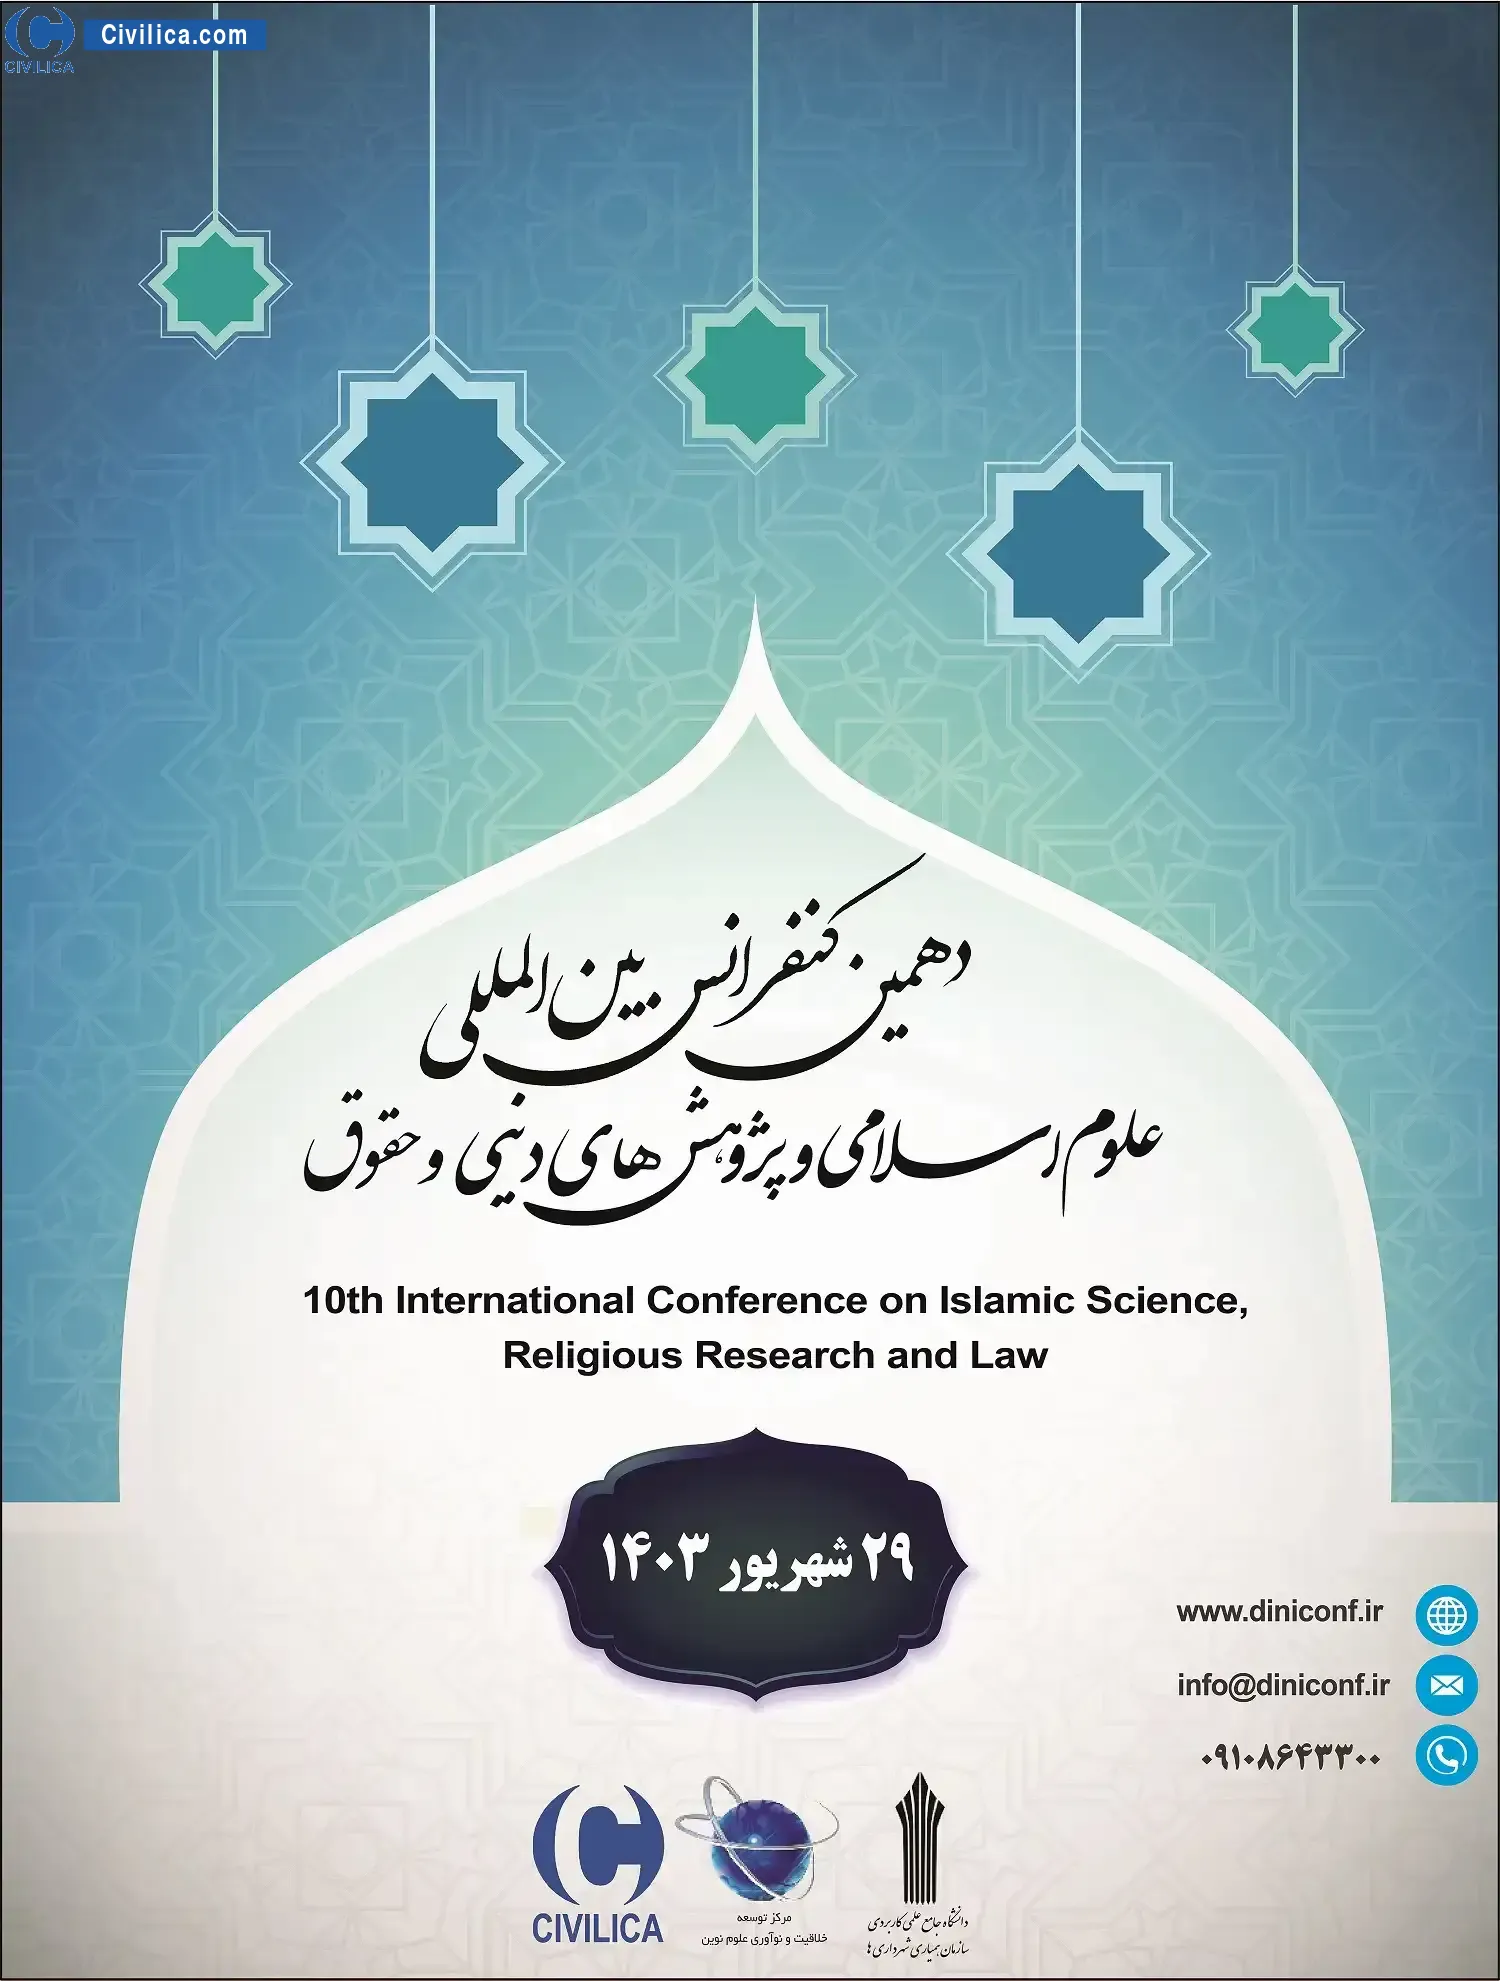 دهمین کنفرانس بین المللی علوم اسلامی، پژوهش های دینی و حقوق